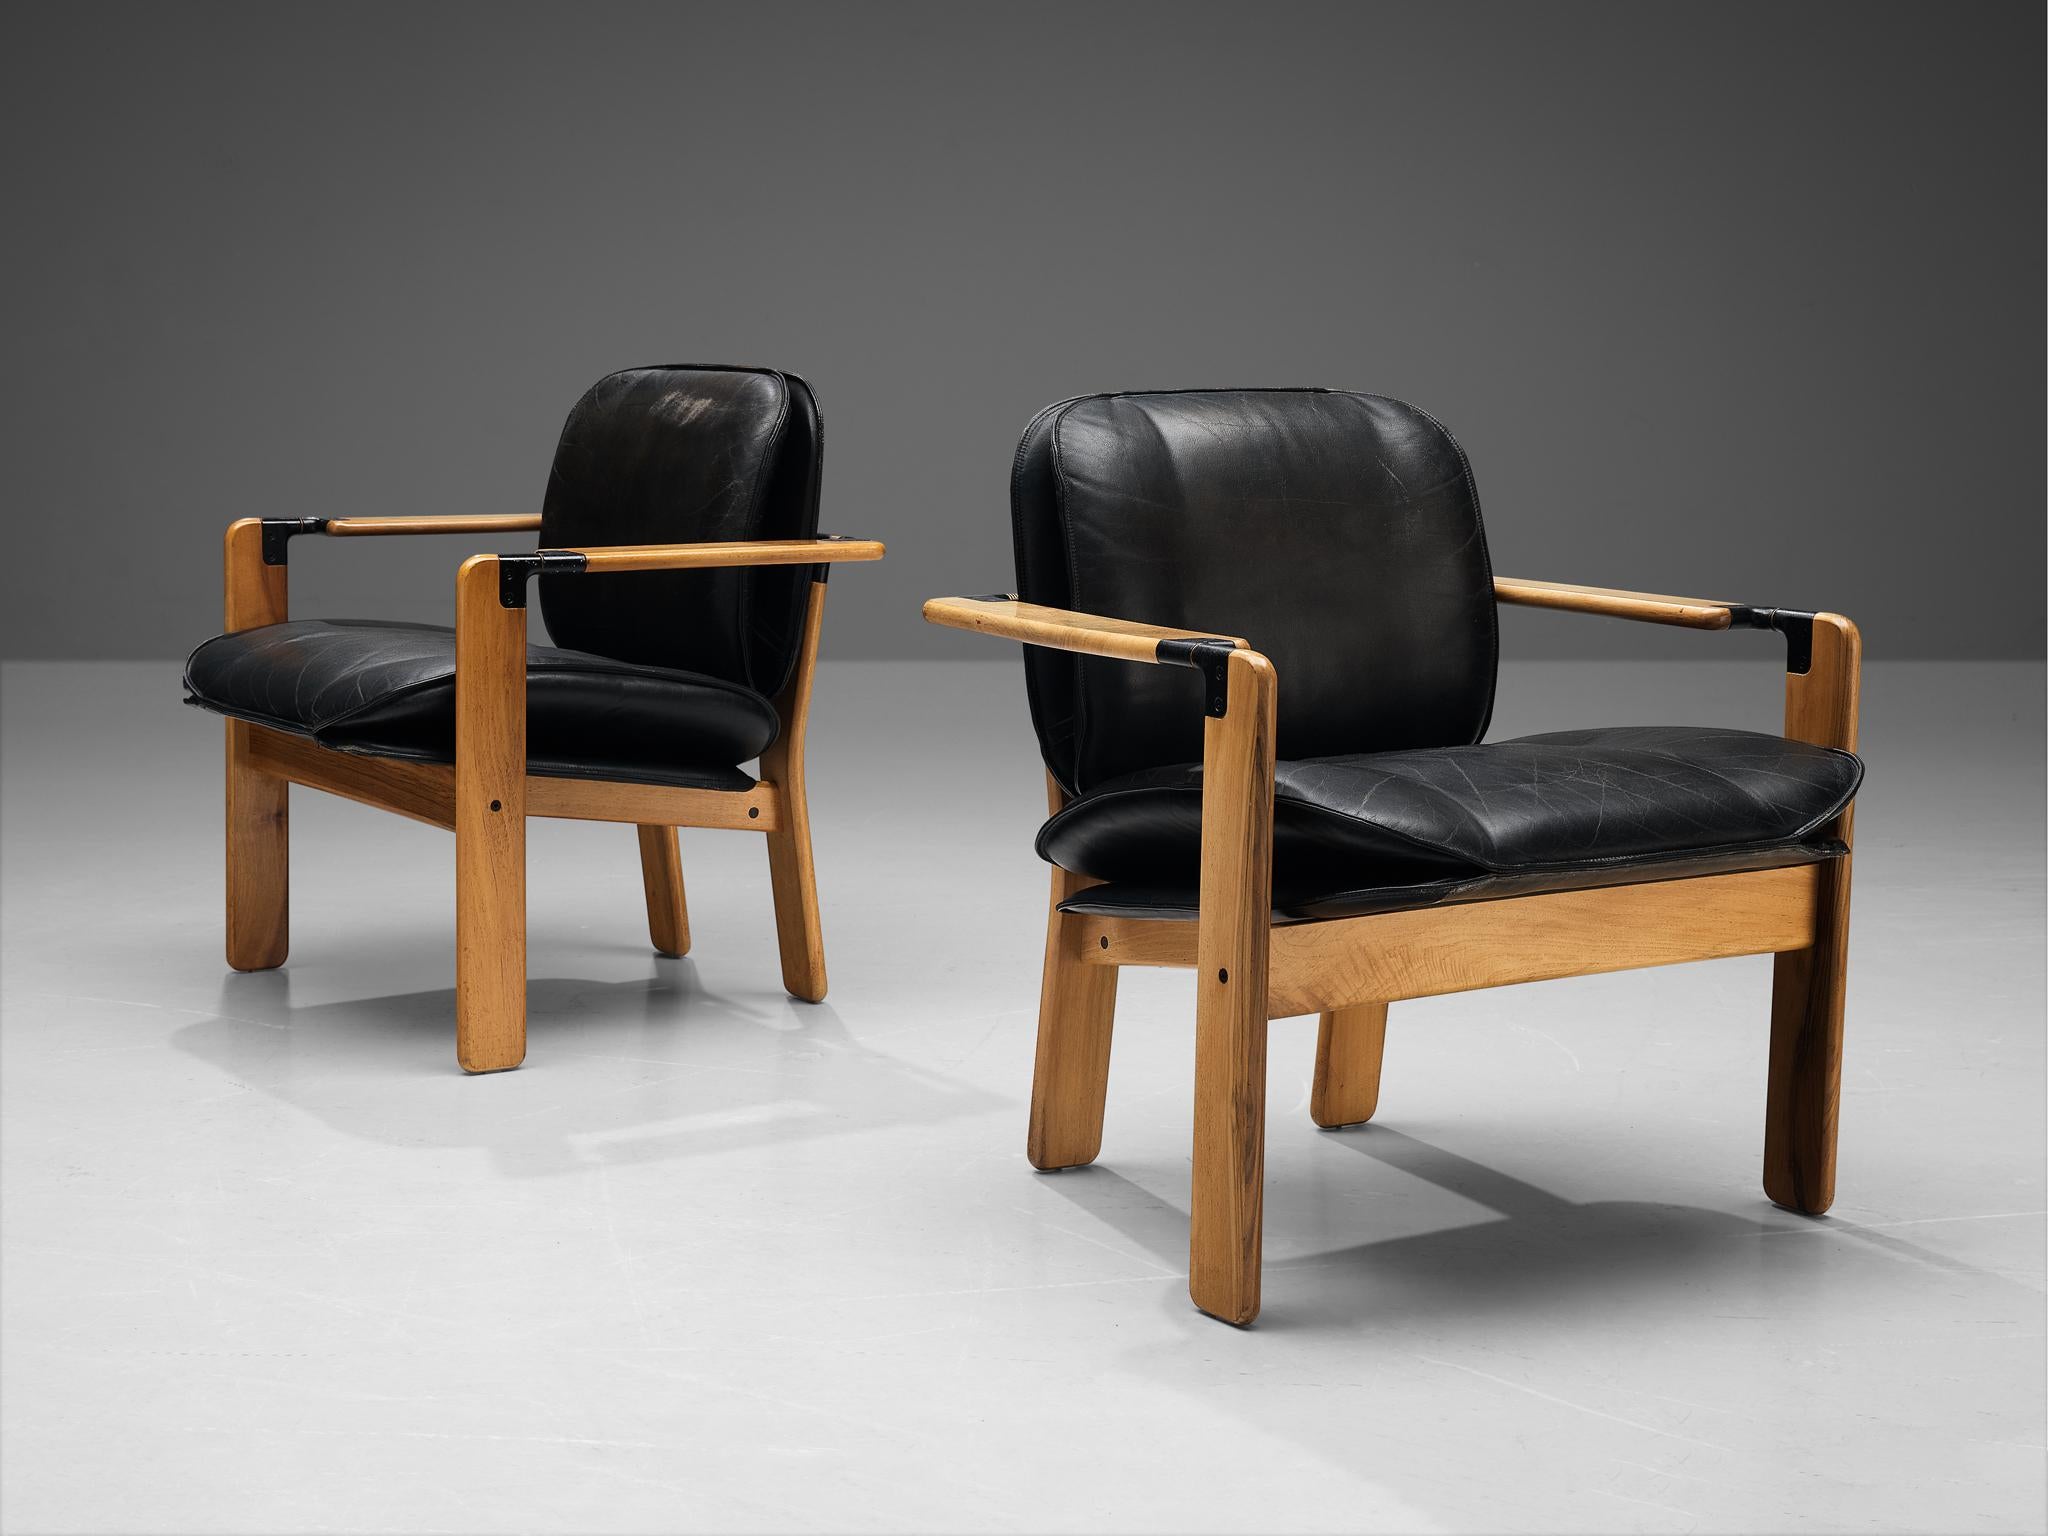 Franco Poli pour Bernini, fauteuils, modèle 'Dueacca', noyer, métal, laiton, cuir, Italie, vers 1985.

Cet élégant ensemble de fauteuils a été conçu en 1985 par Franco Poli et fabriqué par Bernini. Pour son design excentrique, Bernini s'est inspiré